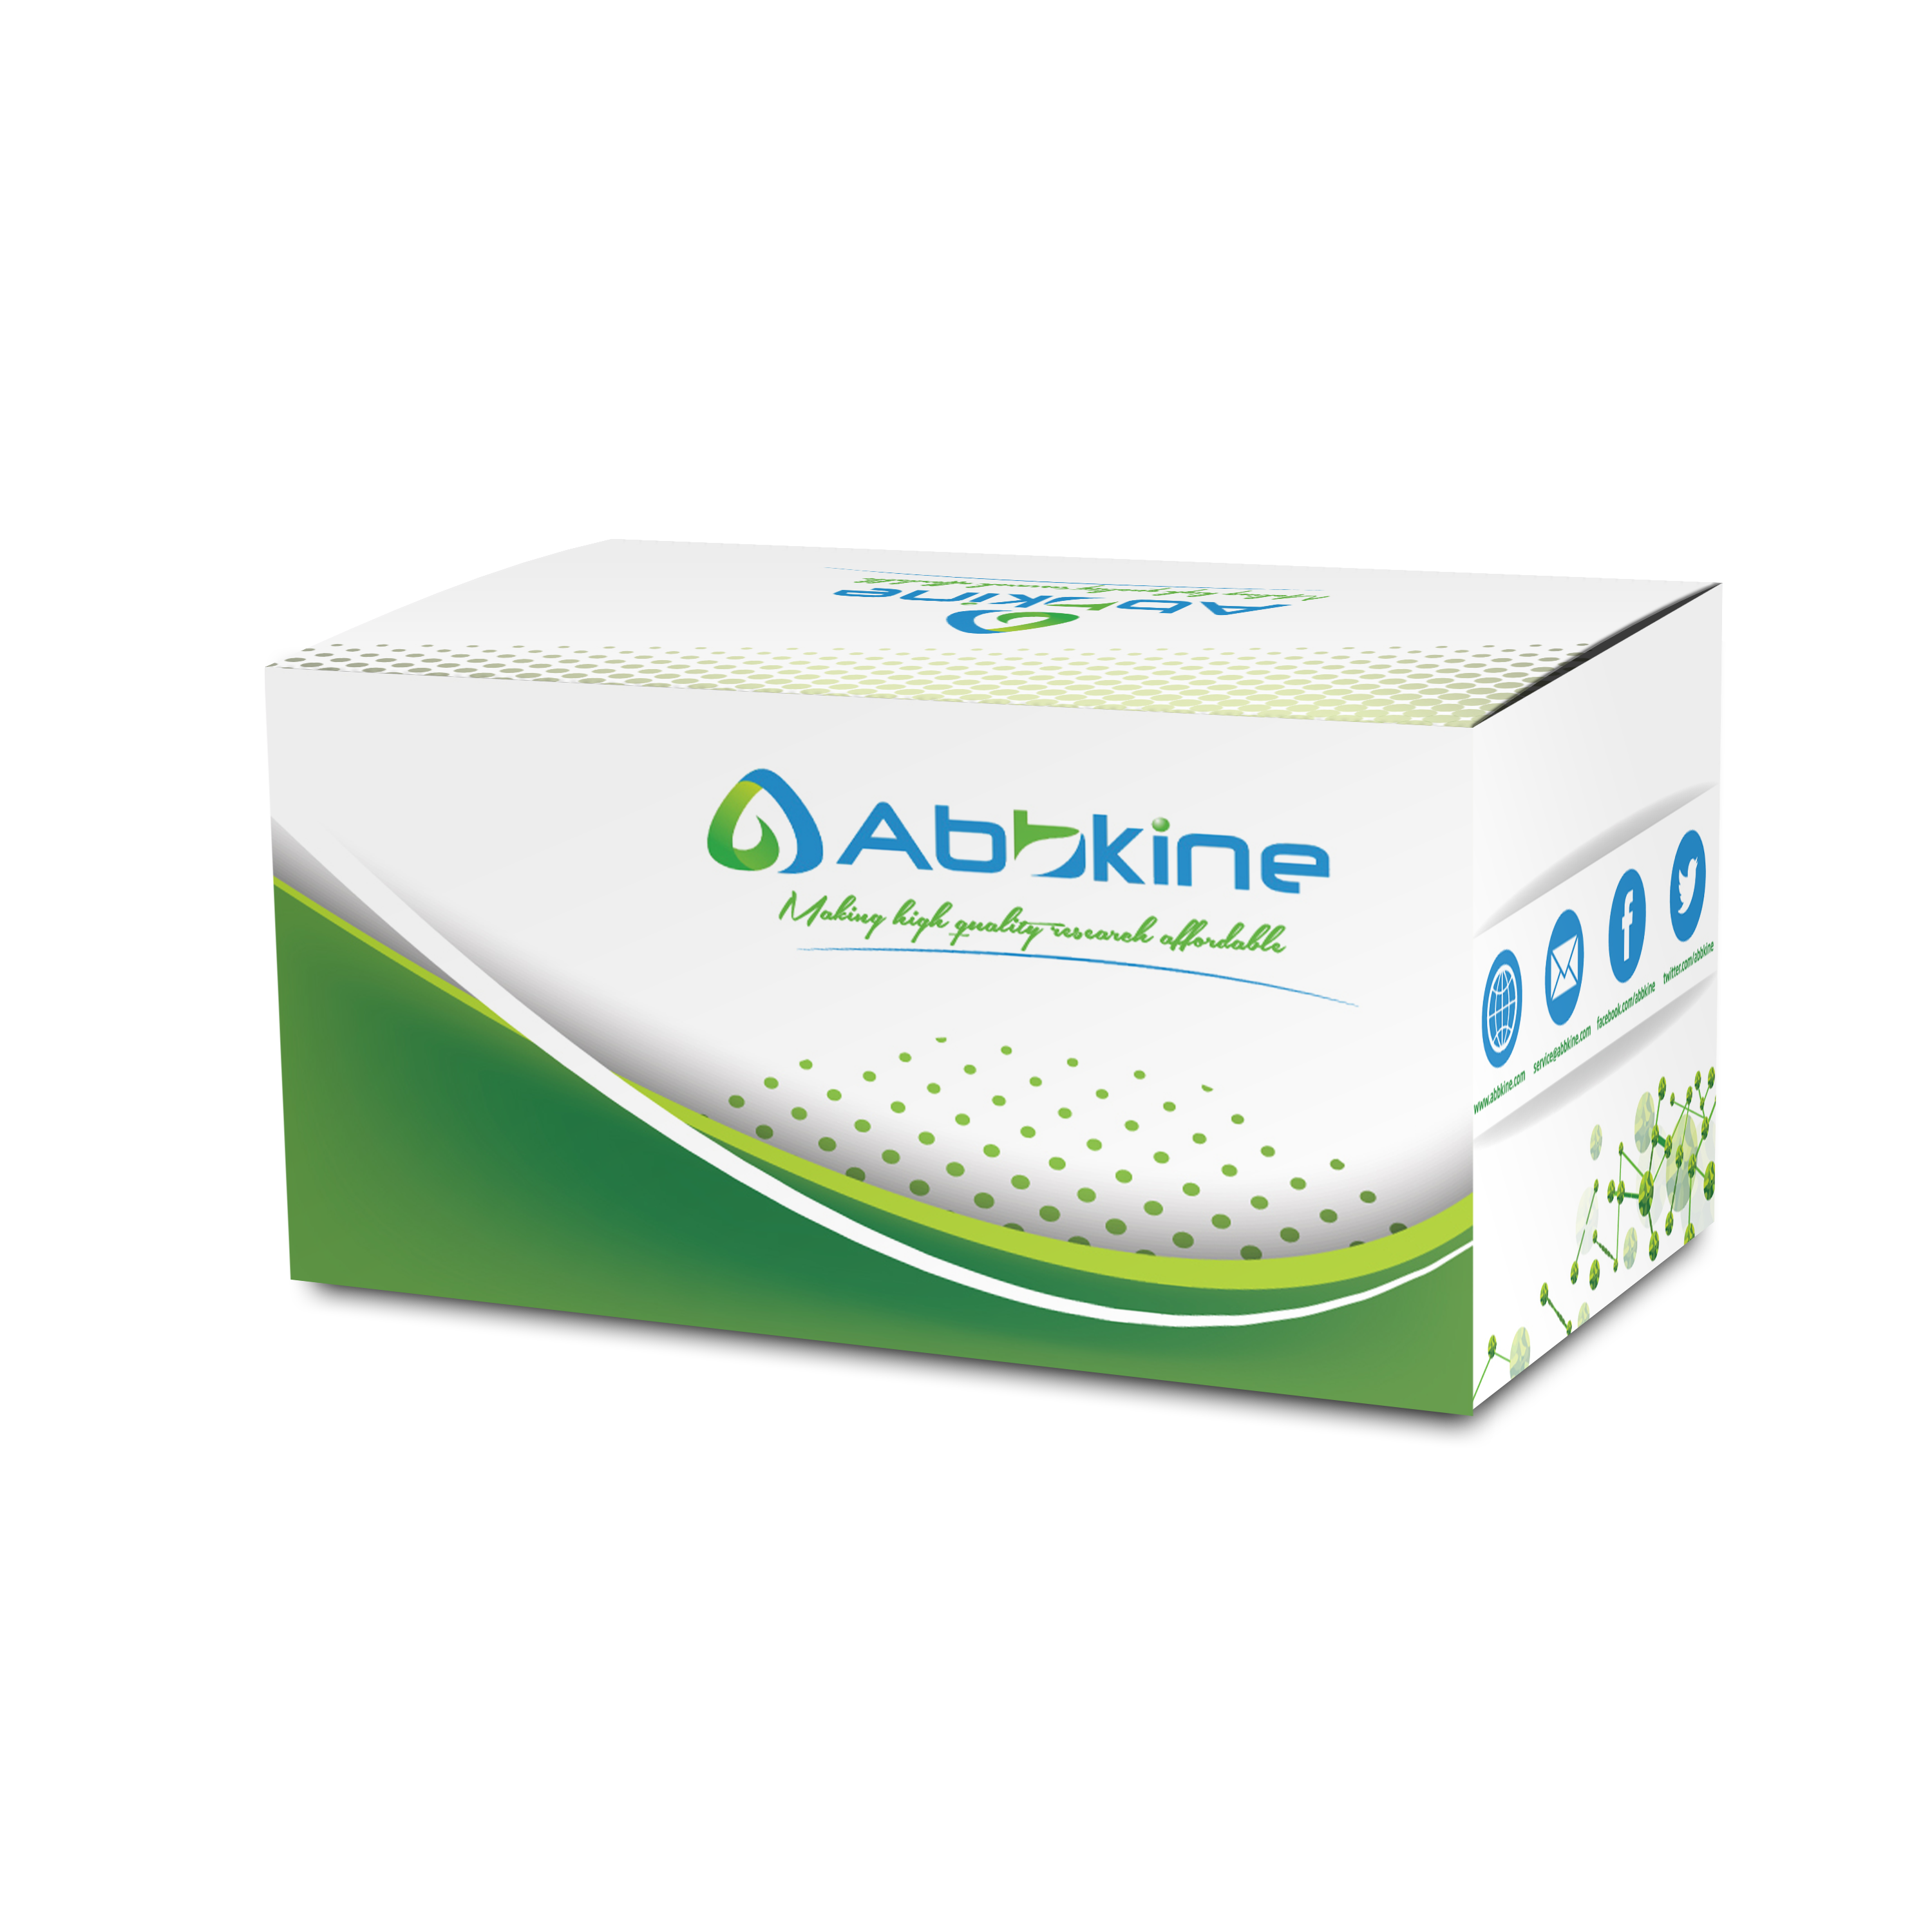 abbkine-kit.png&&Fig. CheKine Triglyceride (TG) Colorimetric Assay Kit